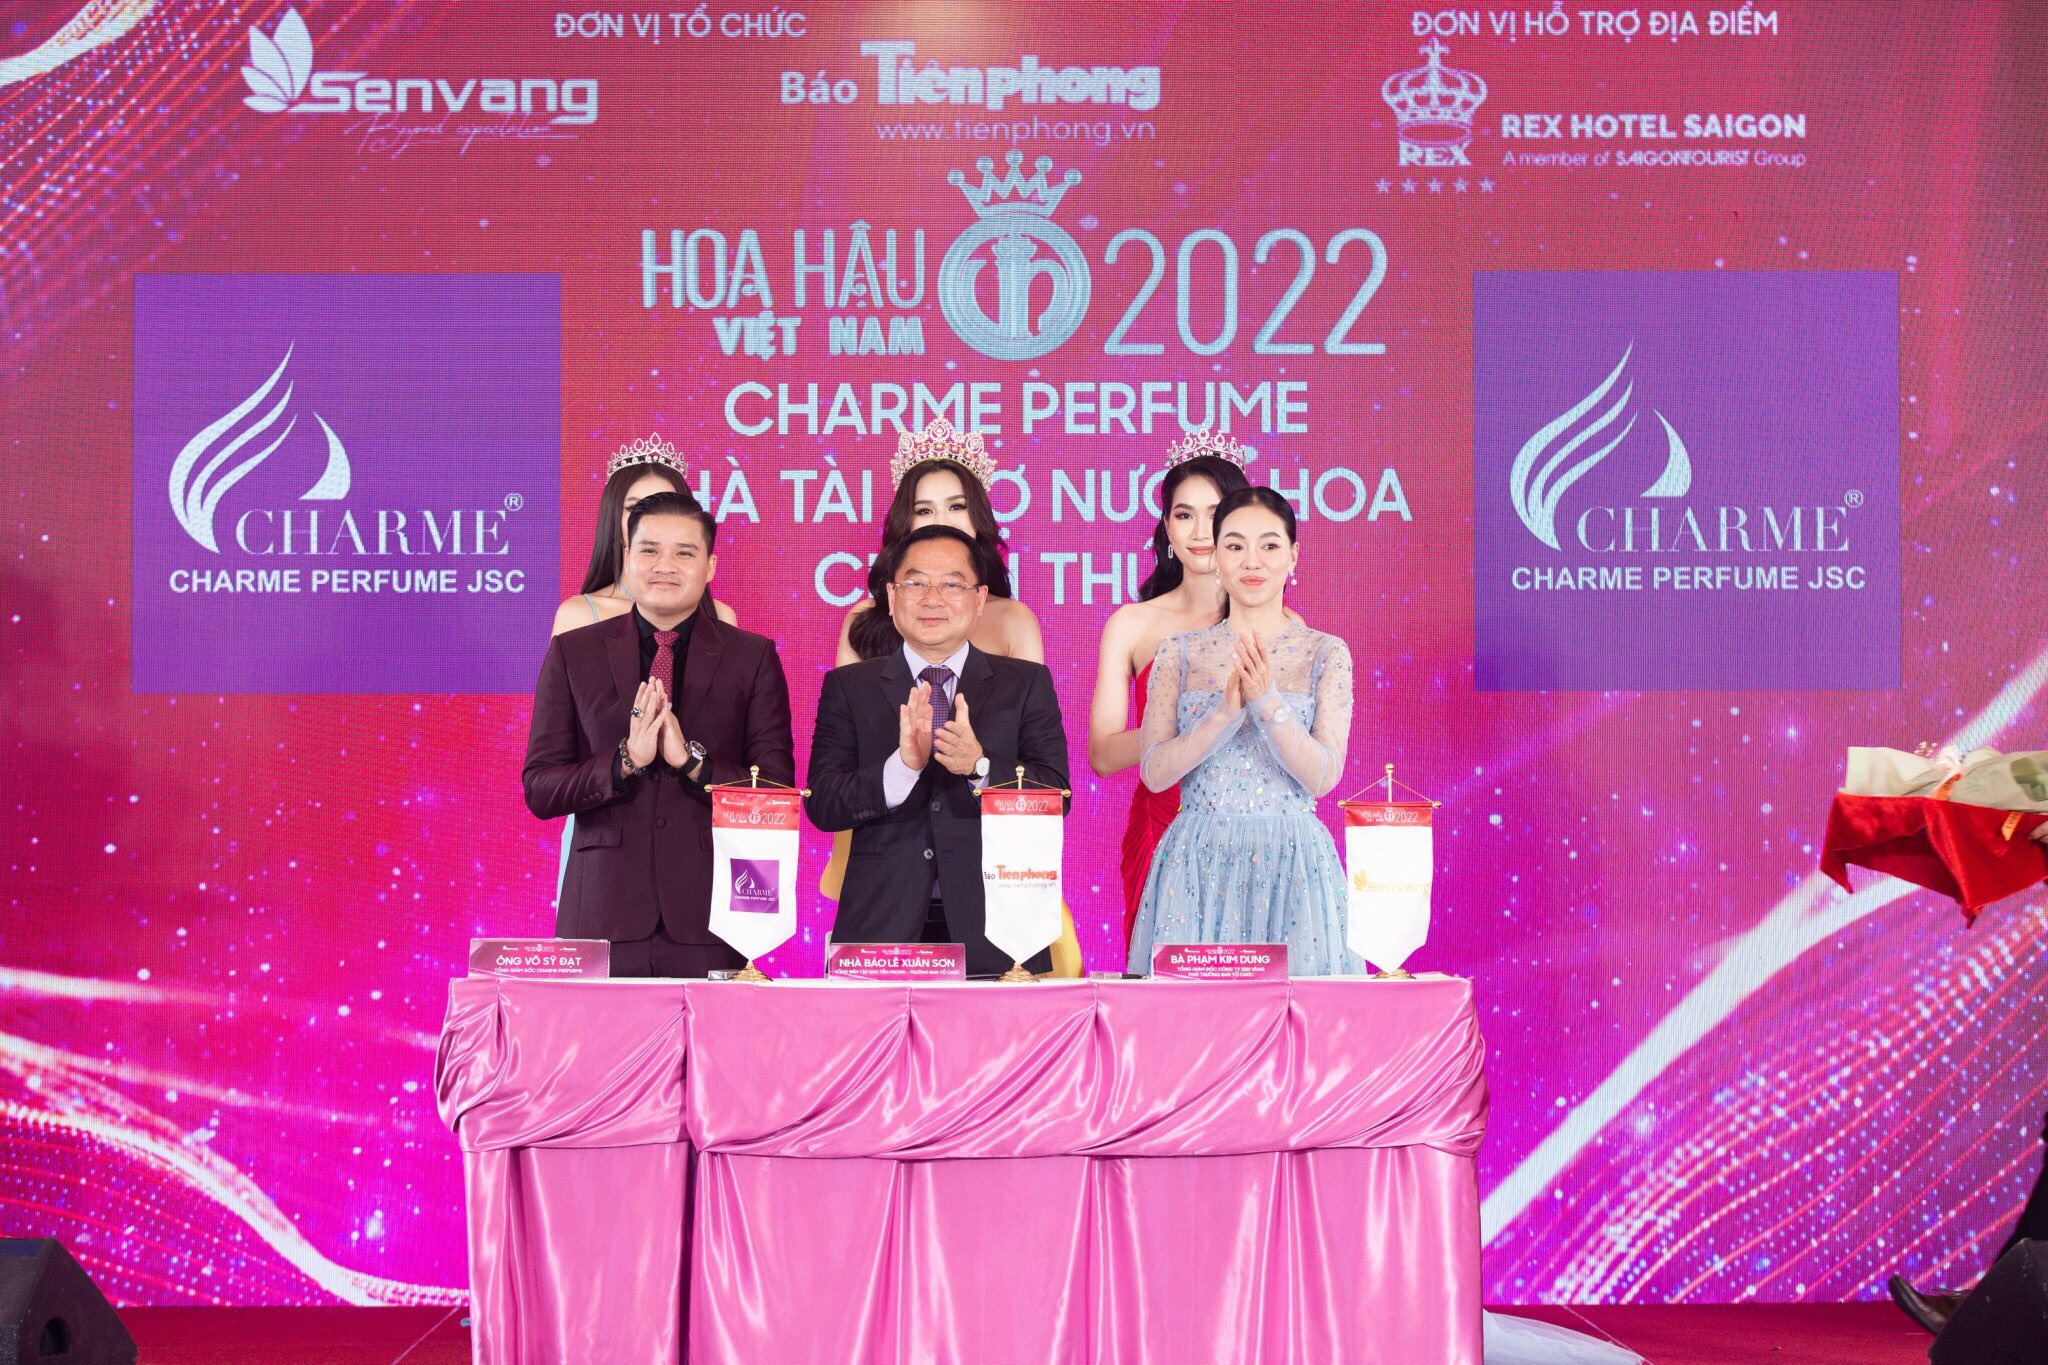 Hoa hậu Việt Nam 2022, Charme Perfume, Ông Võ Sỹ Đạt